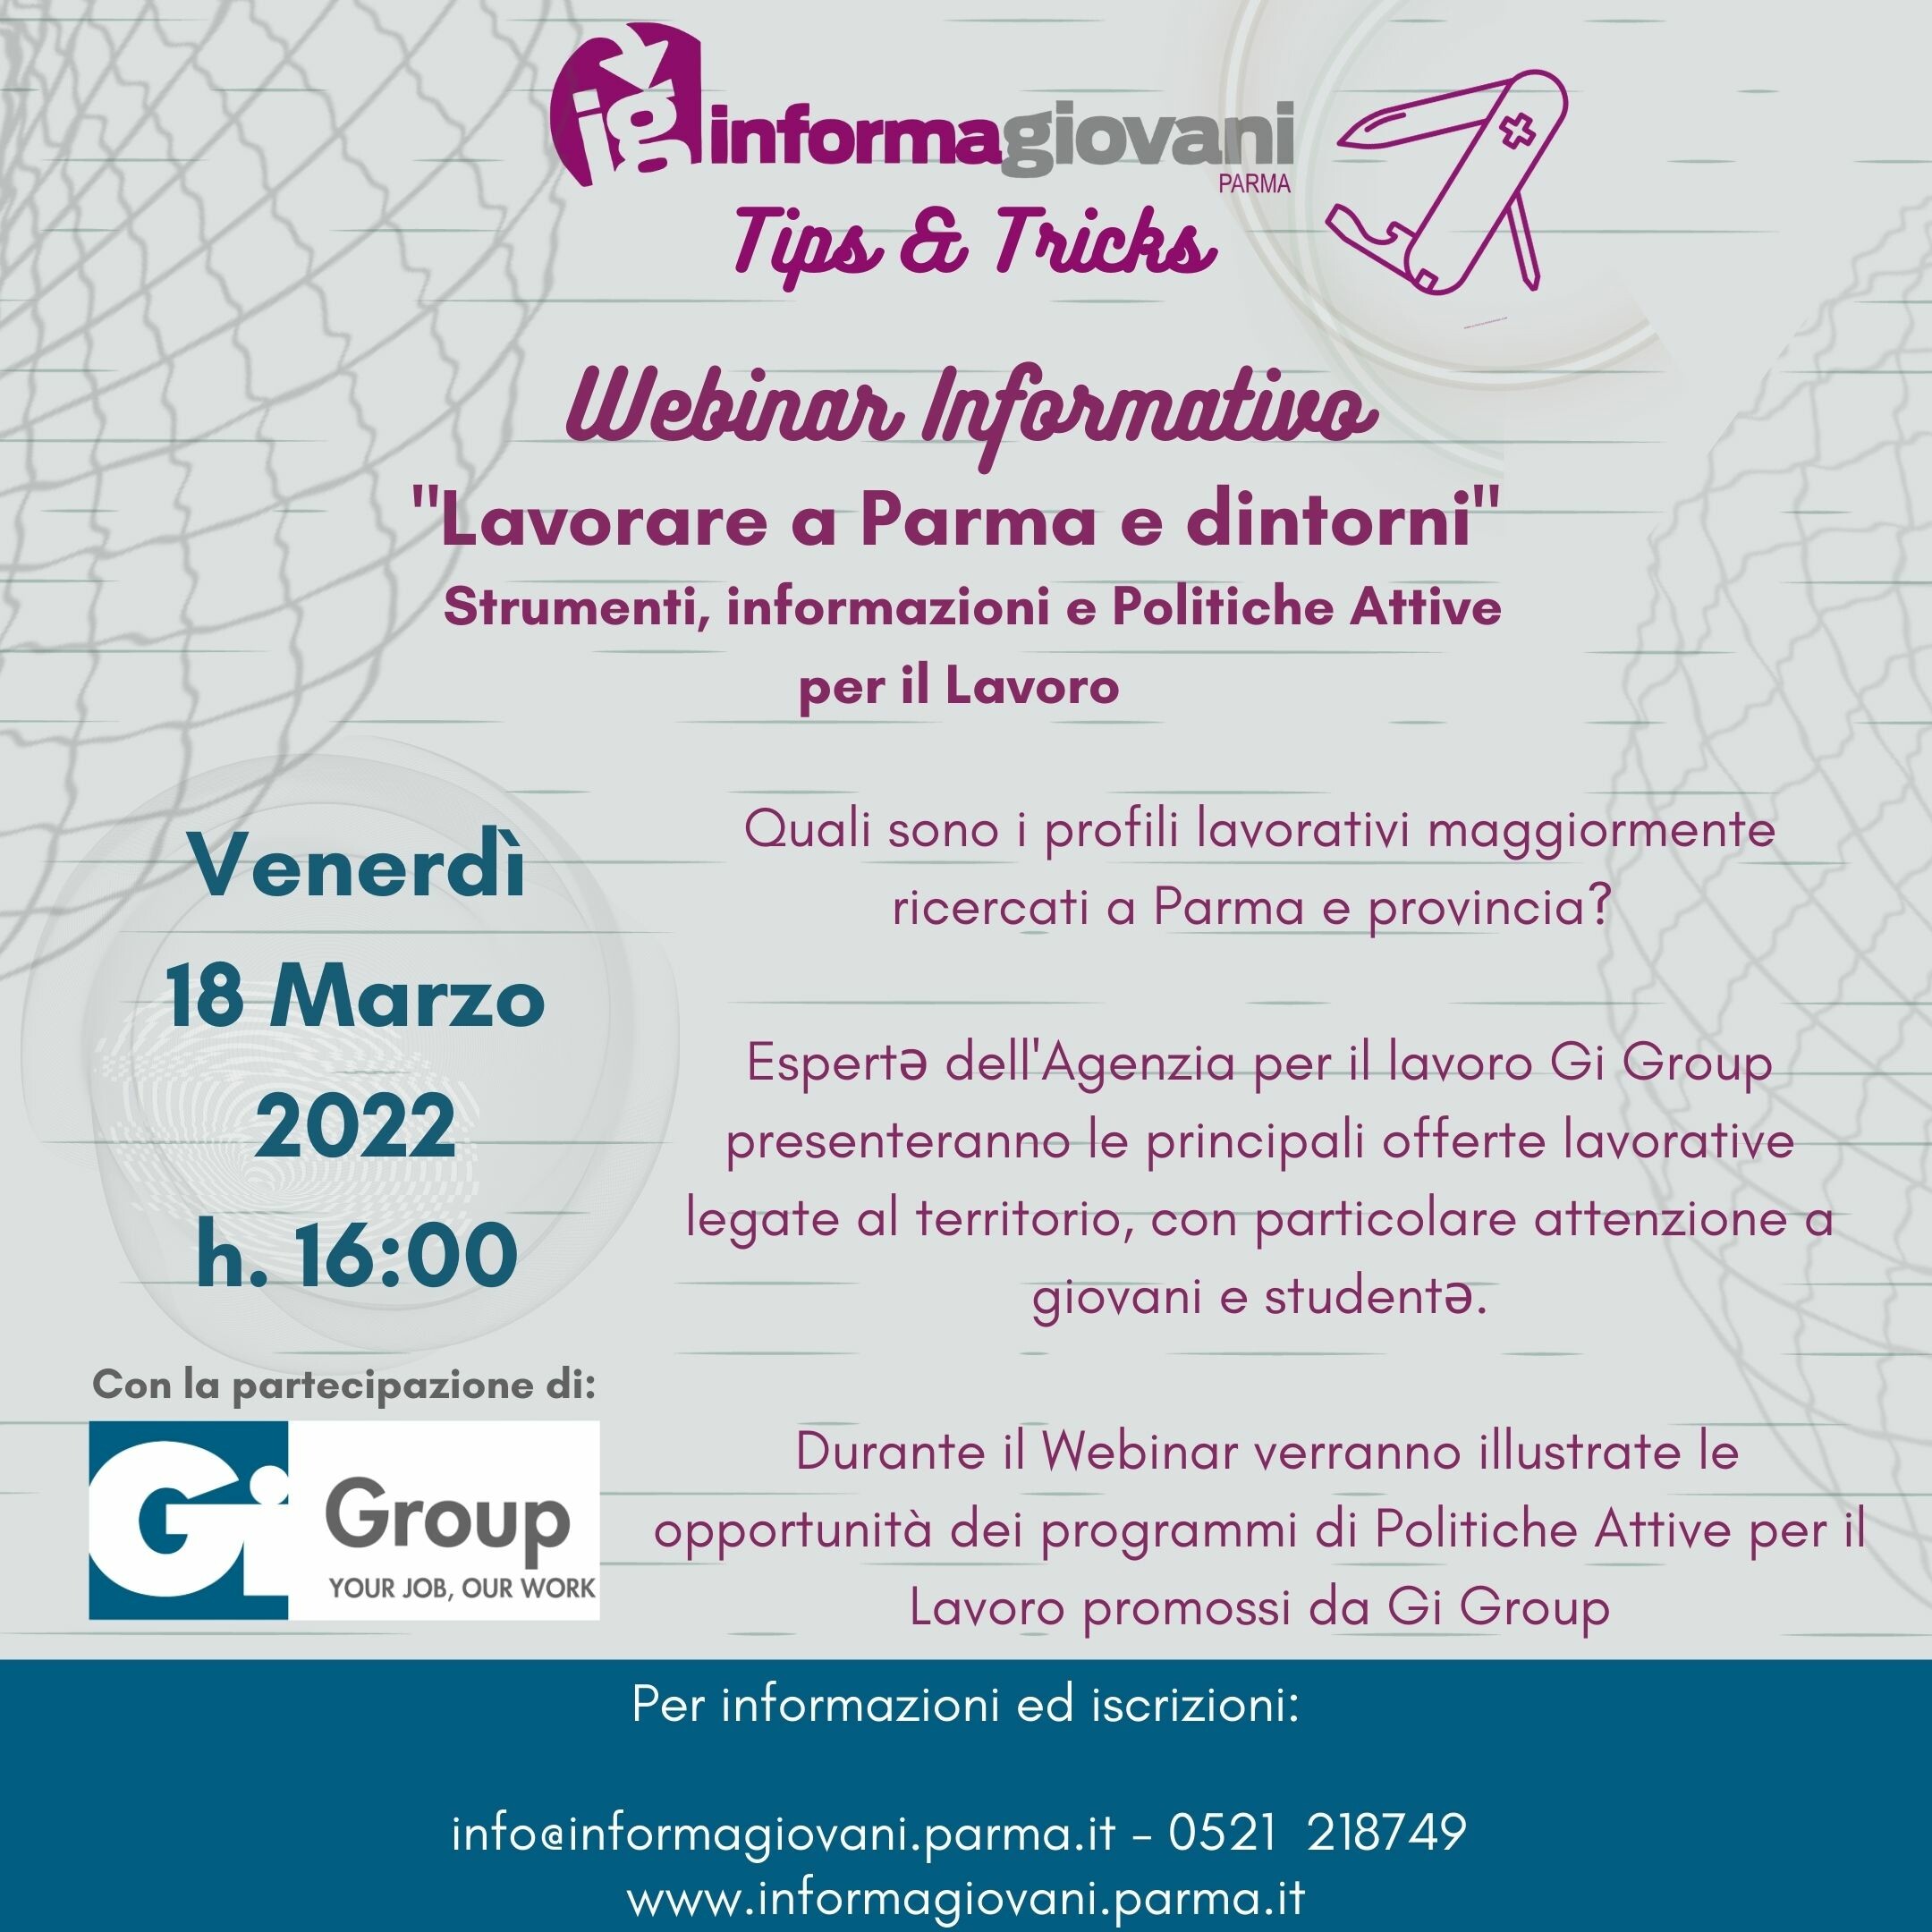 “Lavorare a Parma e dintorni - Strumenti, informazioni e Politiche Attive per il Lavoro", nuovo appuntamento gratuito della rassegna Informagiovani